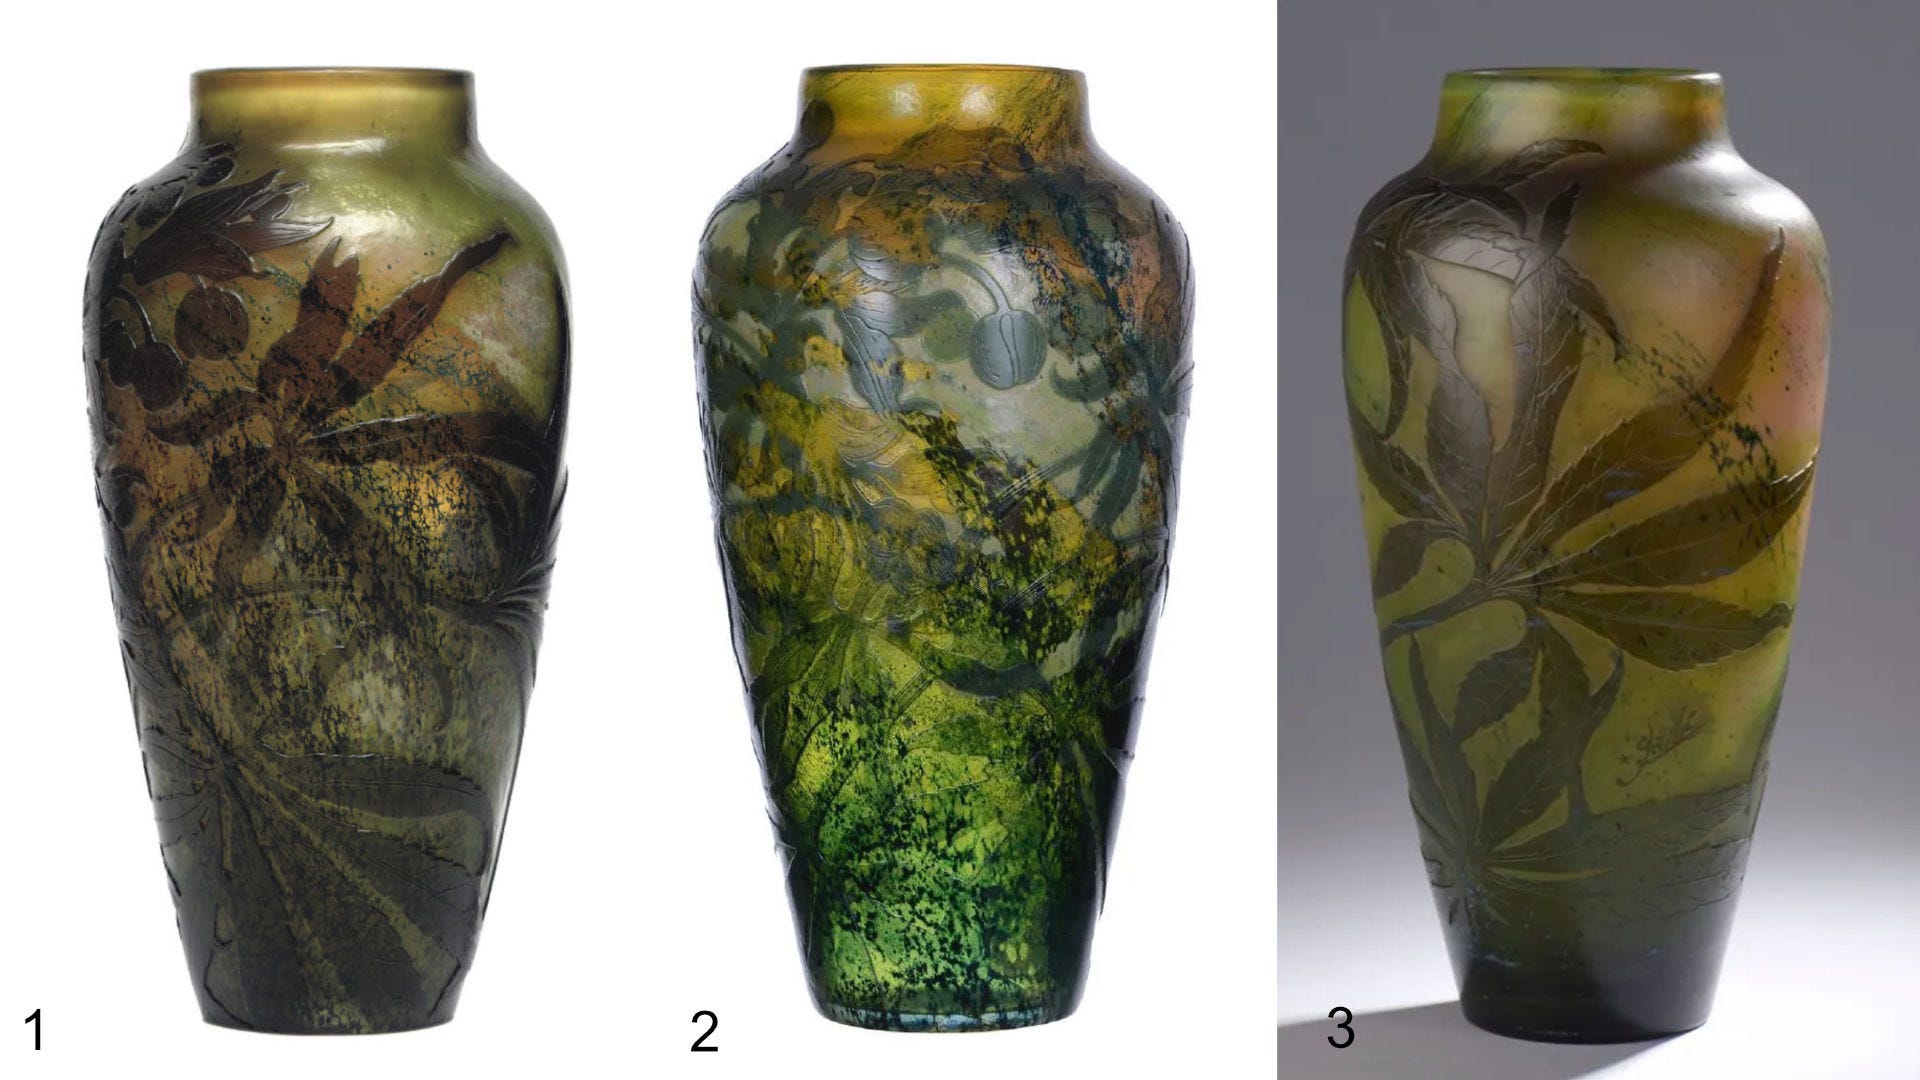 Three Helleborus Foetidus urn shaped vases (35.5 cm) from Émile Gallé or Établissements Gallé: 1. Christie's, Live Auction 7423, 04.03.2007; 2. Douglass 03.18.2017 lot 20; 3. Rossini 06.24.2021 lot 79.